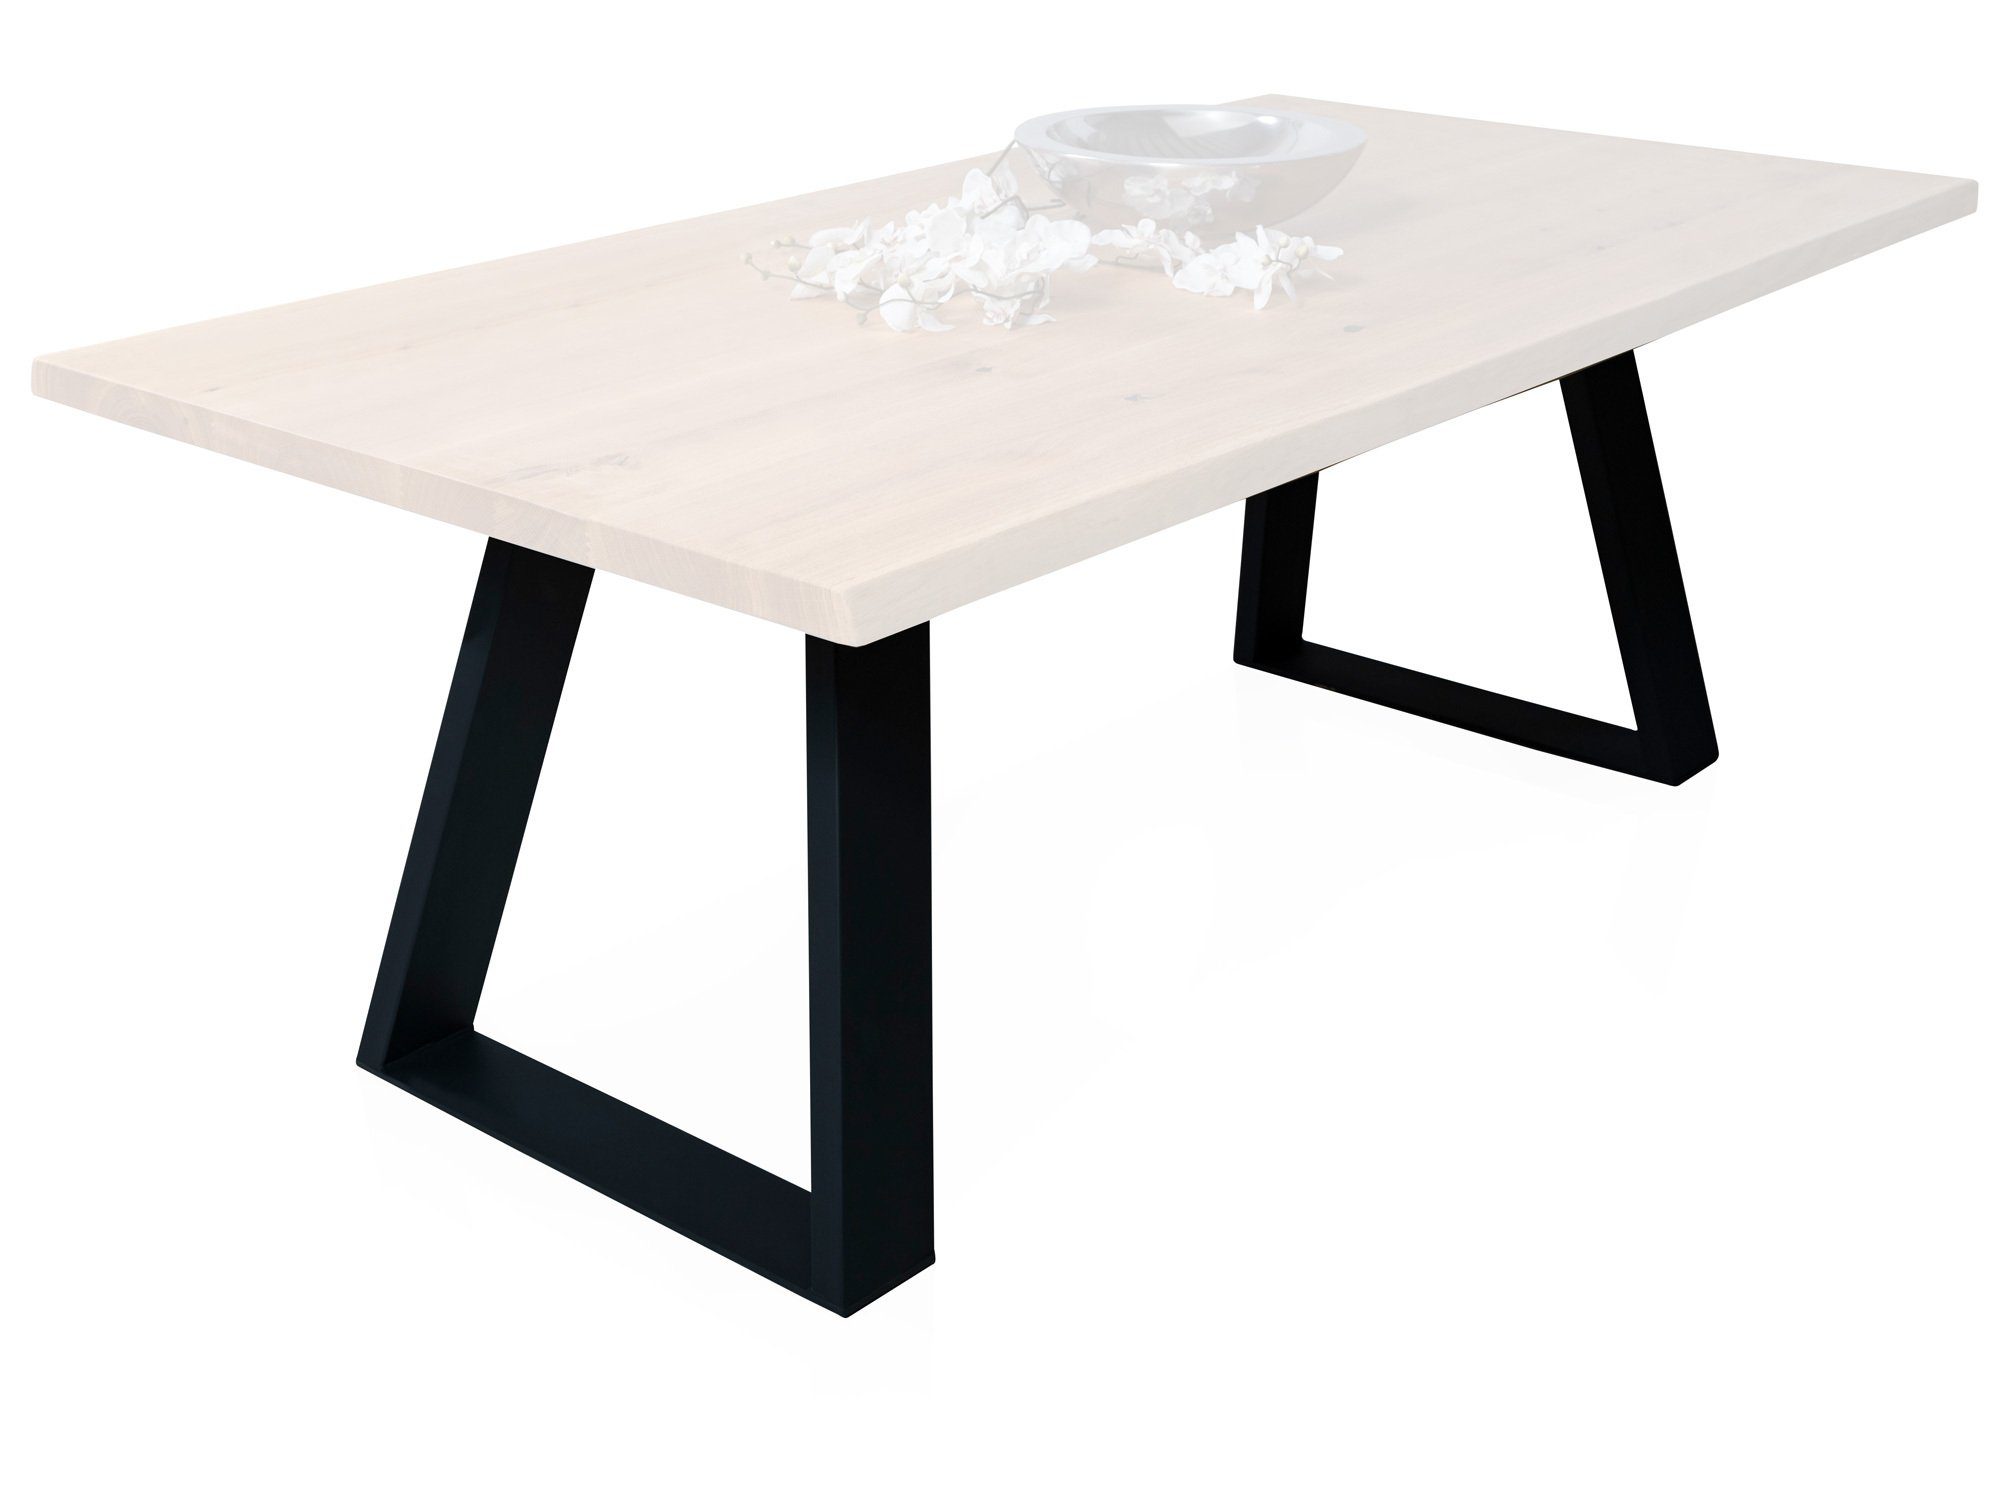 Moebel-Eins Tischgestell, 1 Paar Gestelle / Kufen MÜNCHEN für Esstische, Material Stahl, schwarz